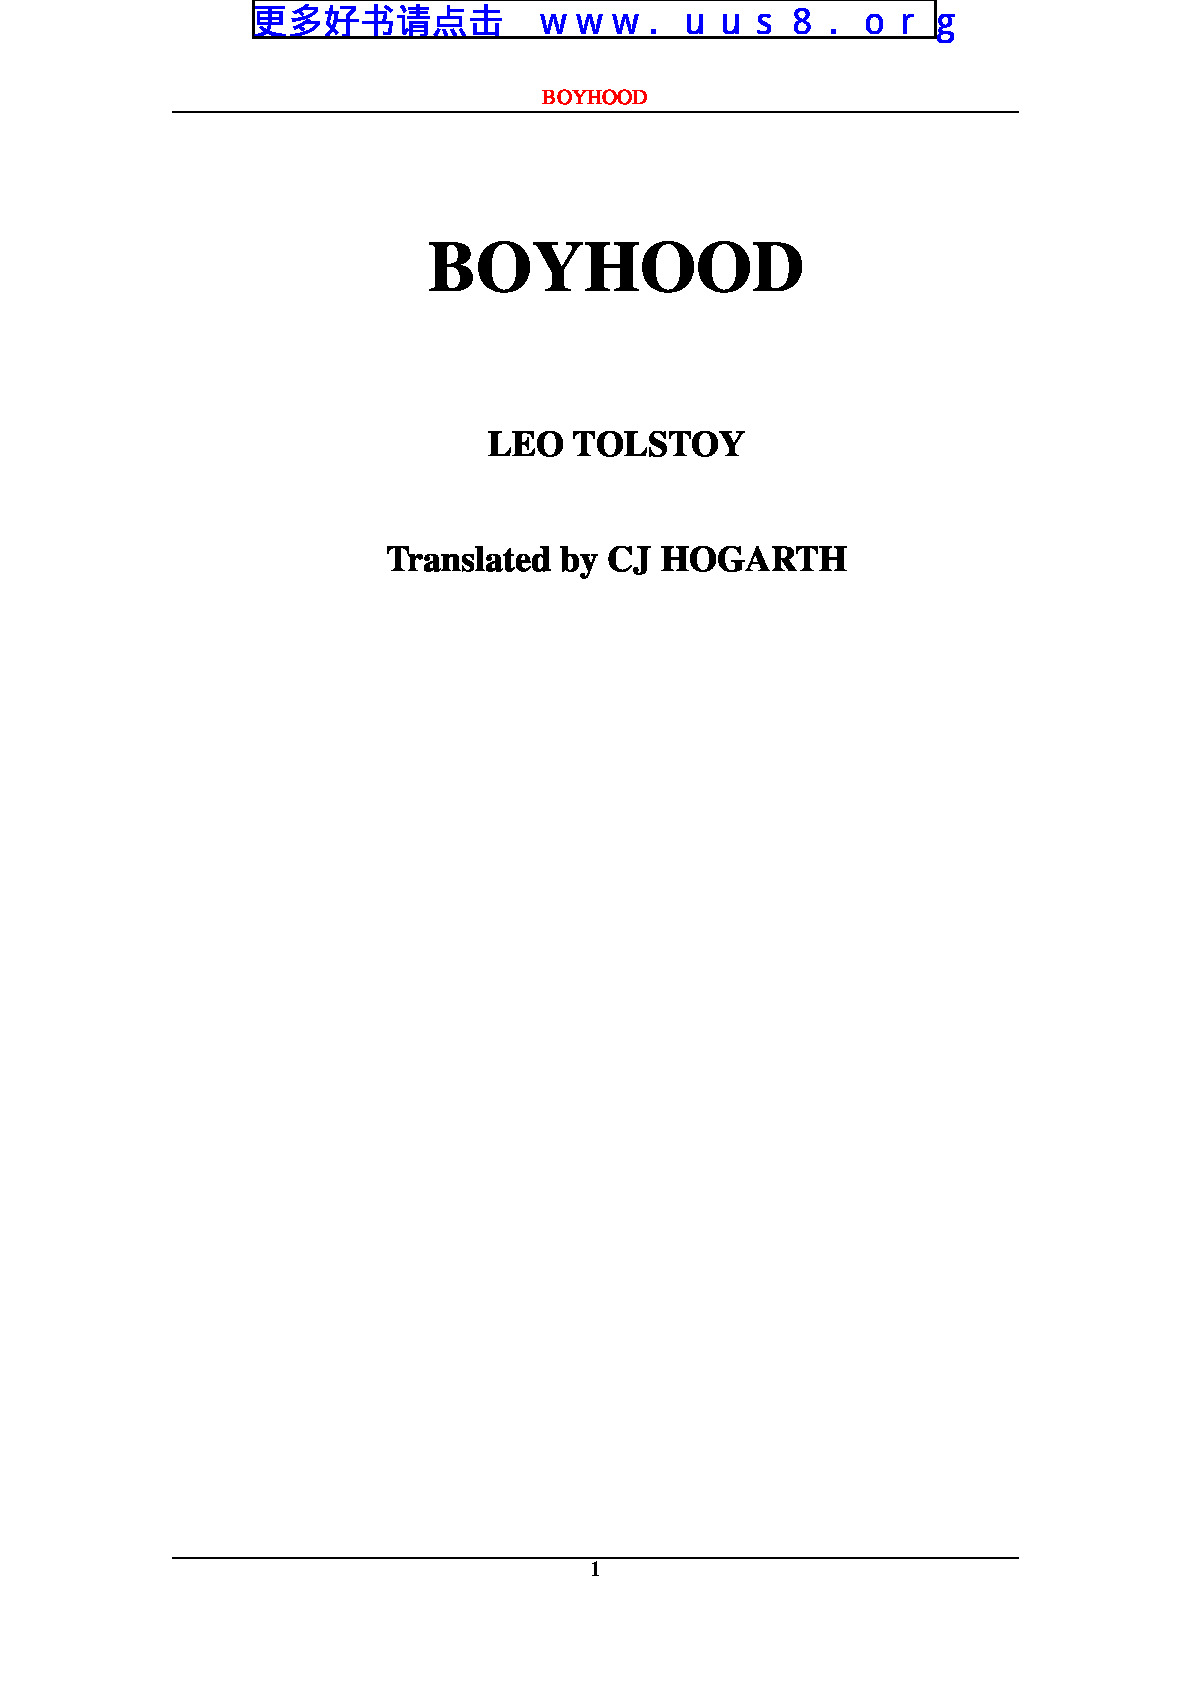 boyhood(孩提)